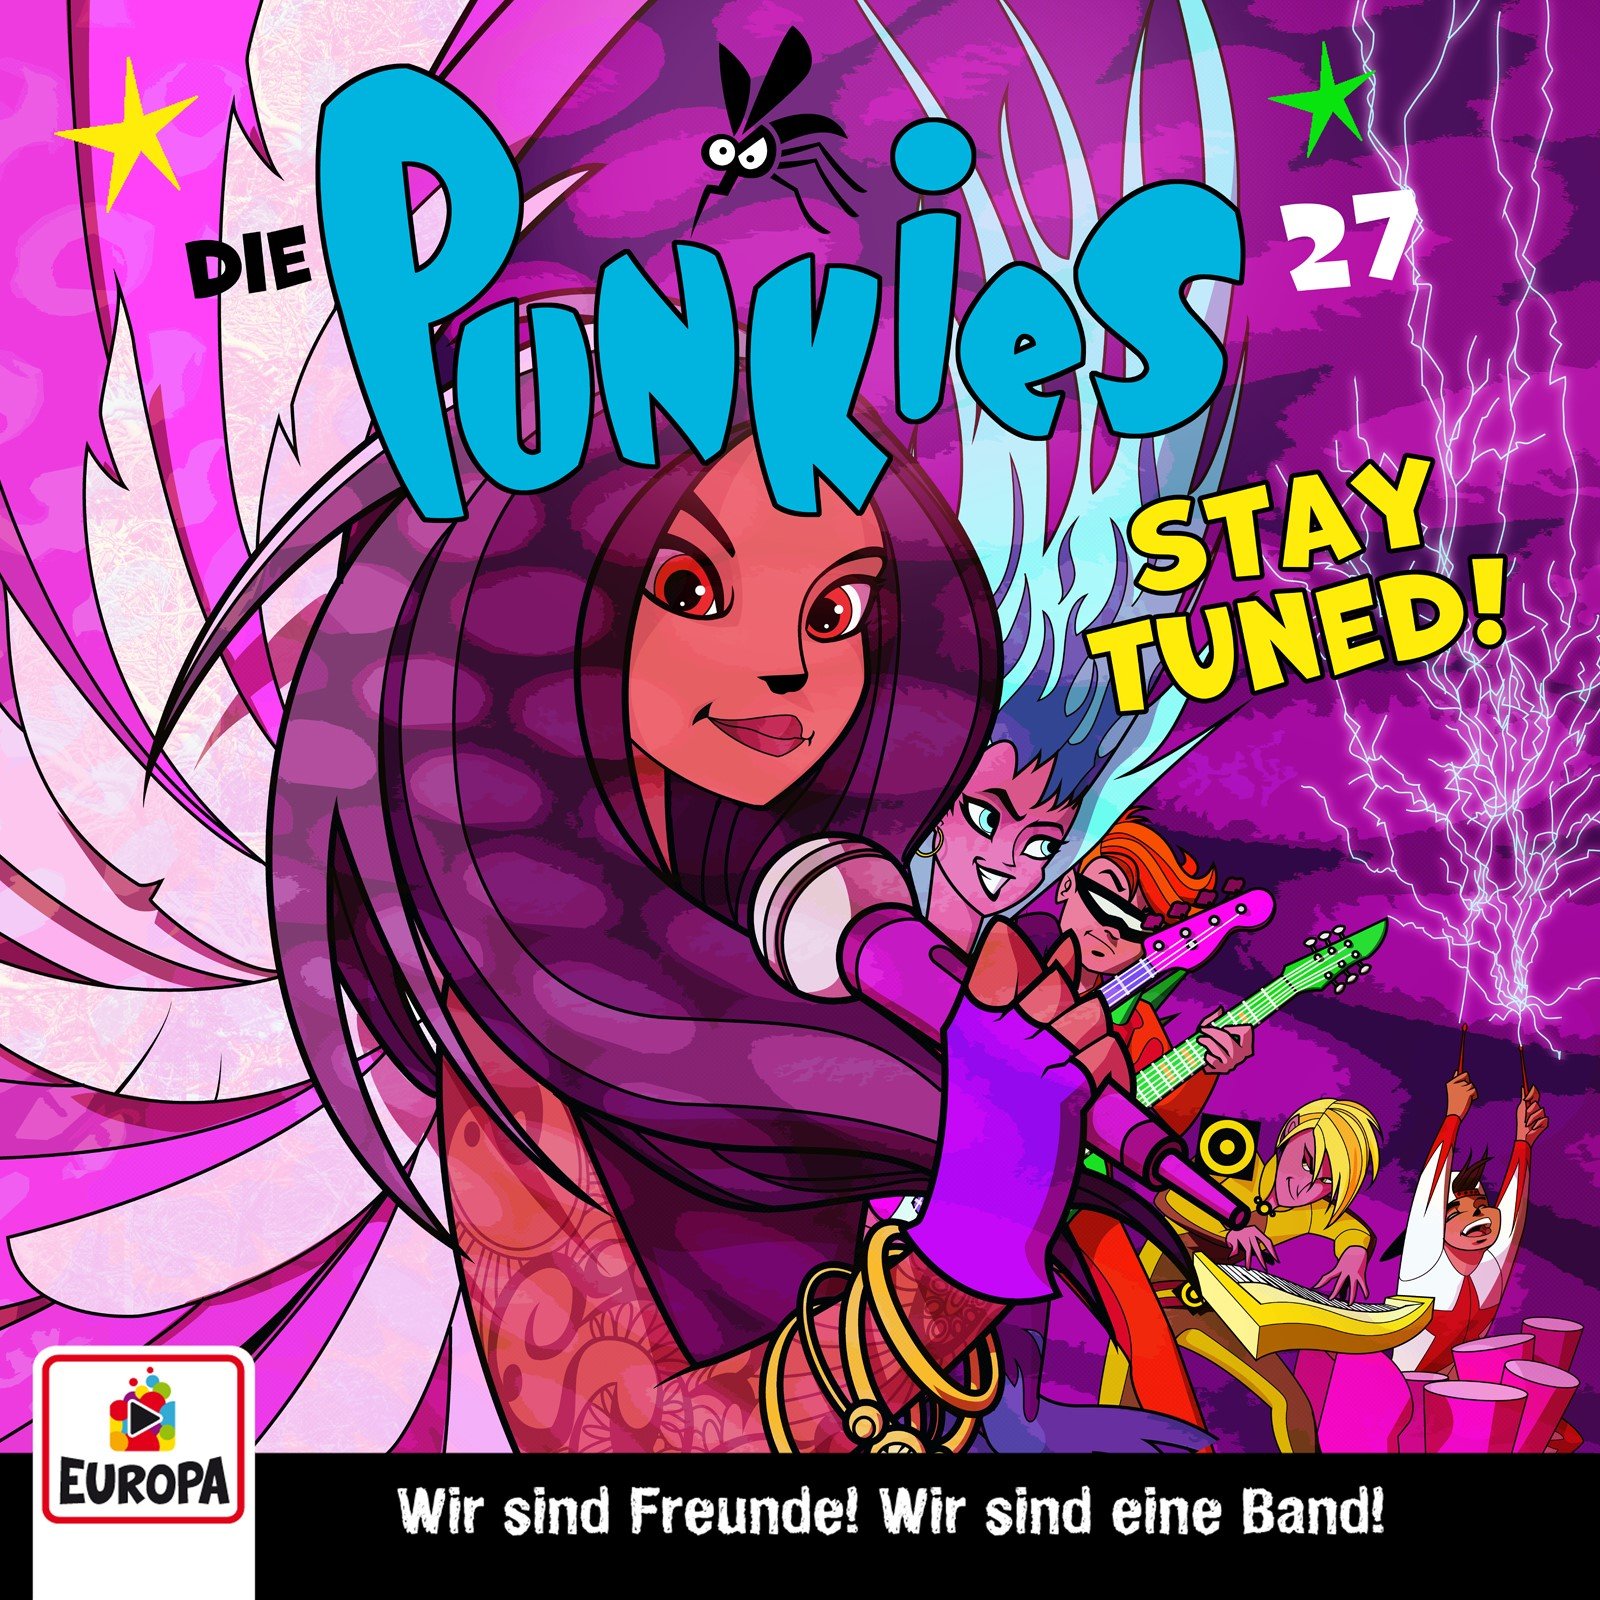 Die Punkies : Stay tuned!